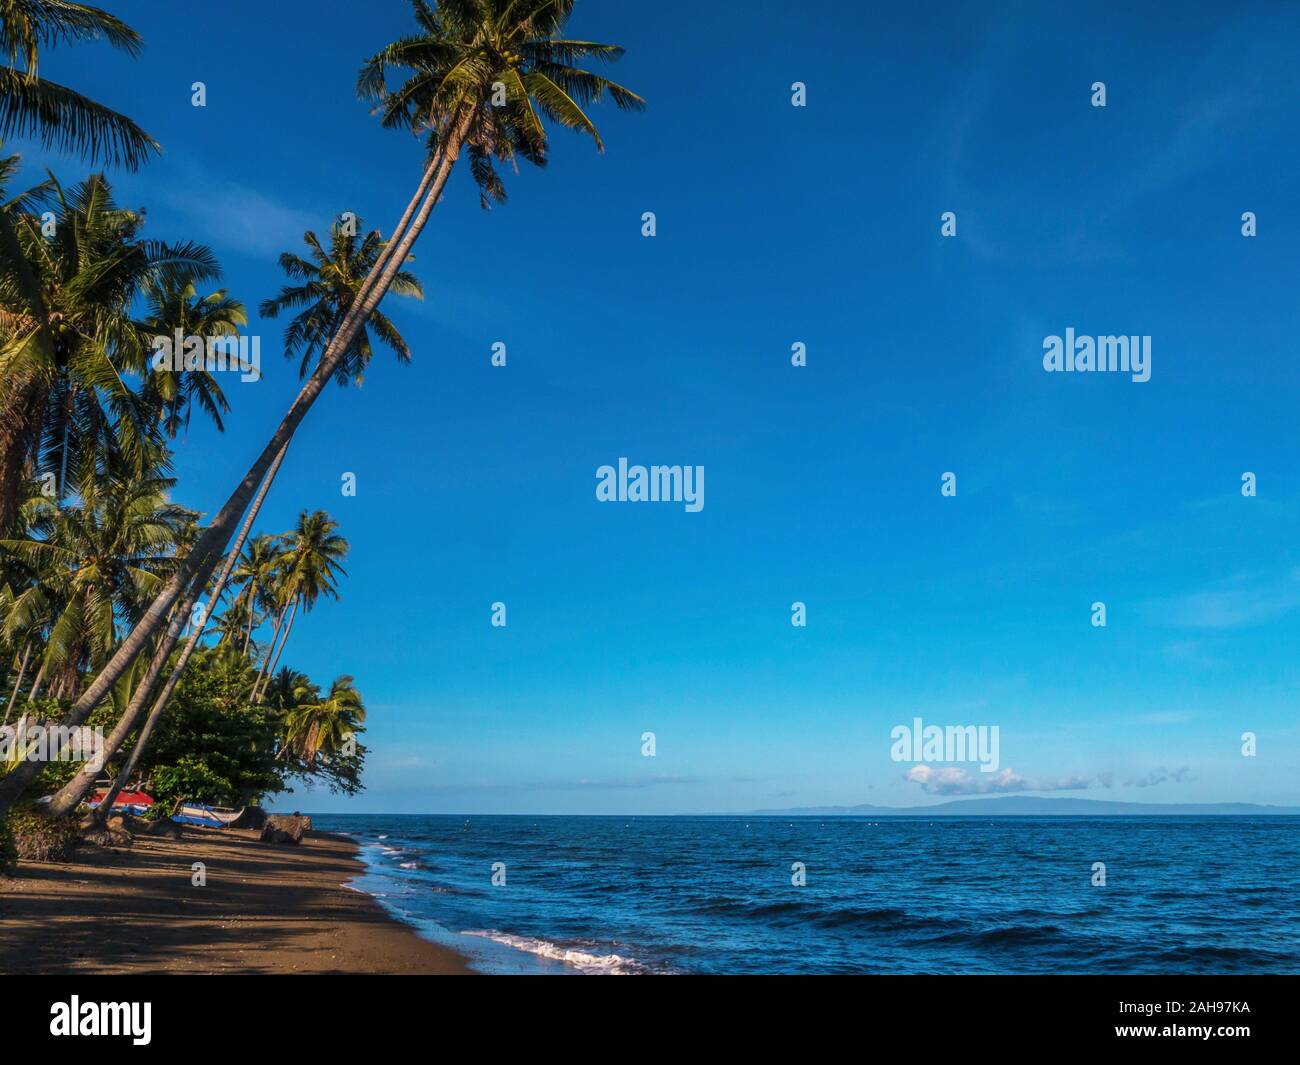 Un marrone sabbia spiaggia e la calma del mare su un isola tropicale nelle Filippine, con alte palme di cocco e un vivid blue sky. Foto Stock